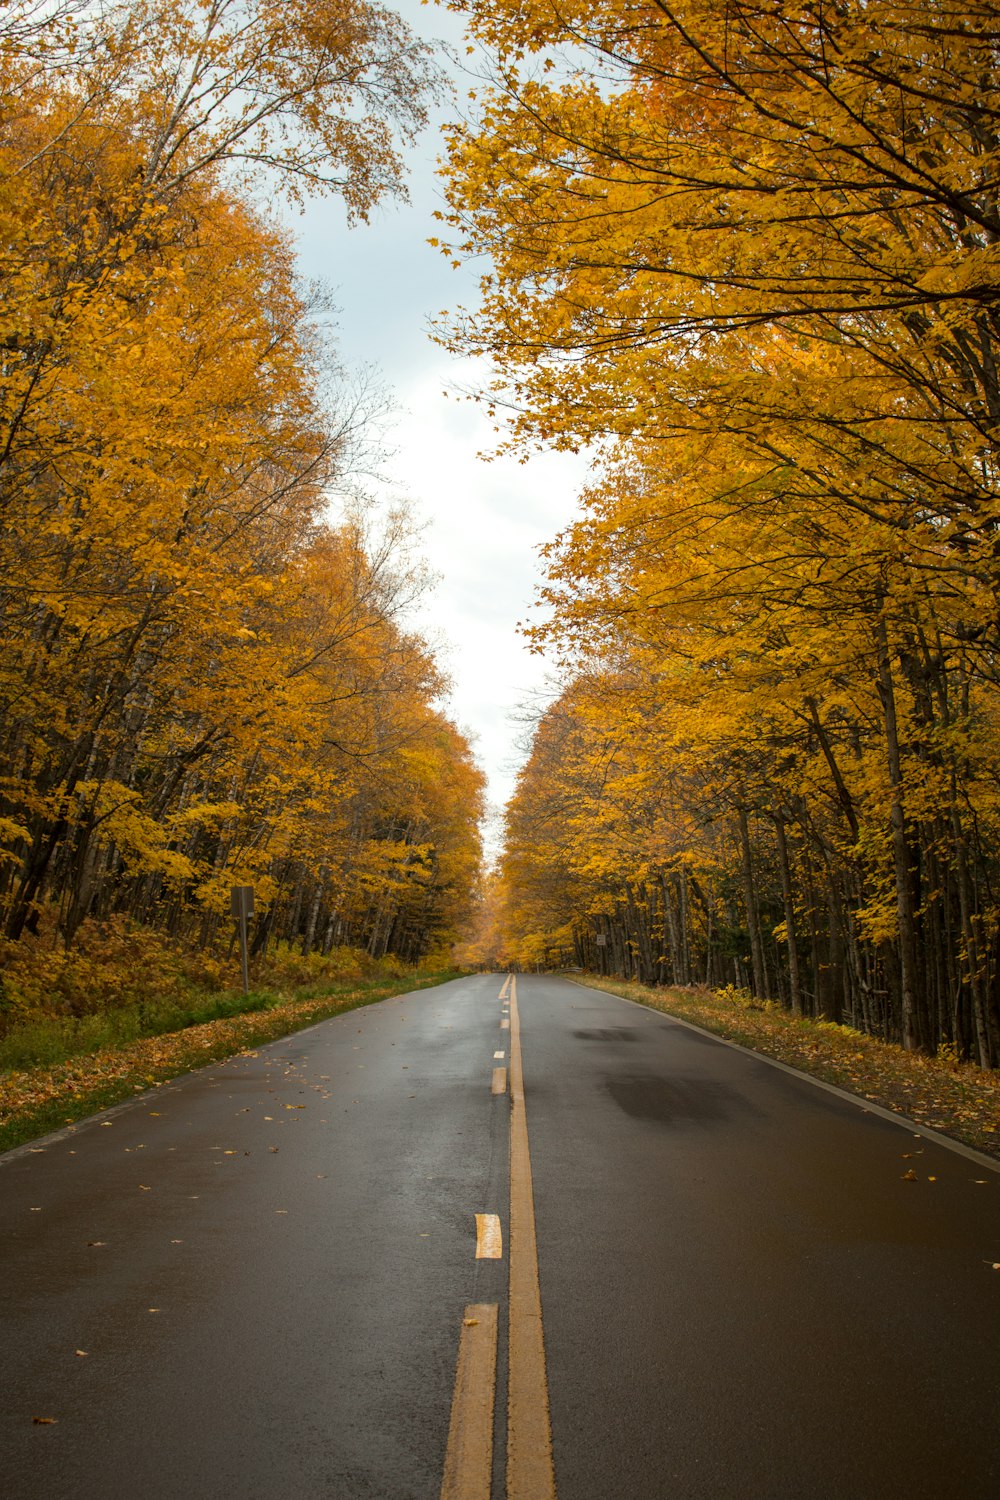 Una strada vuota circondata da alberi con foglie gialle